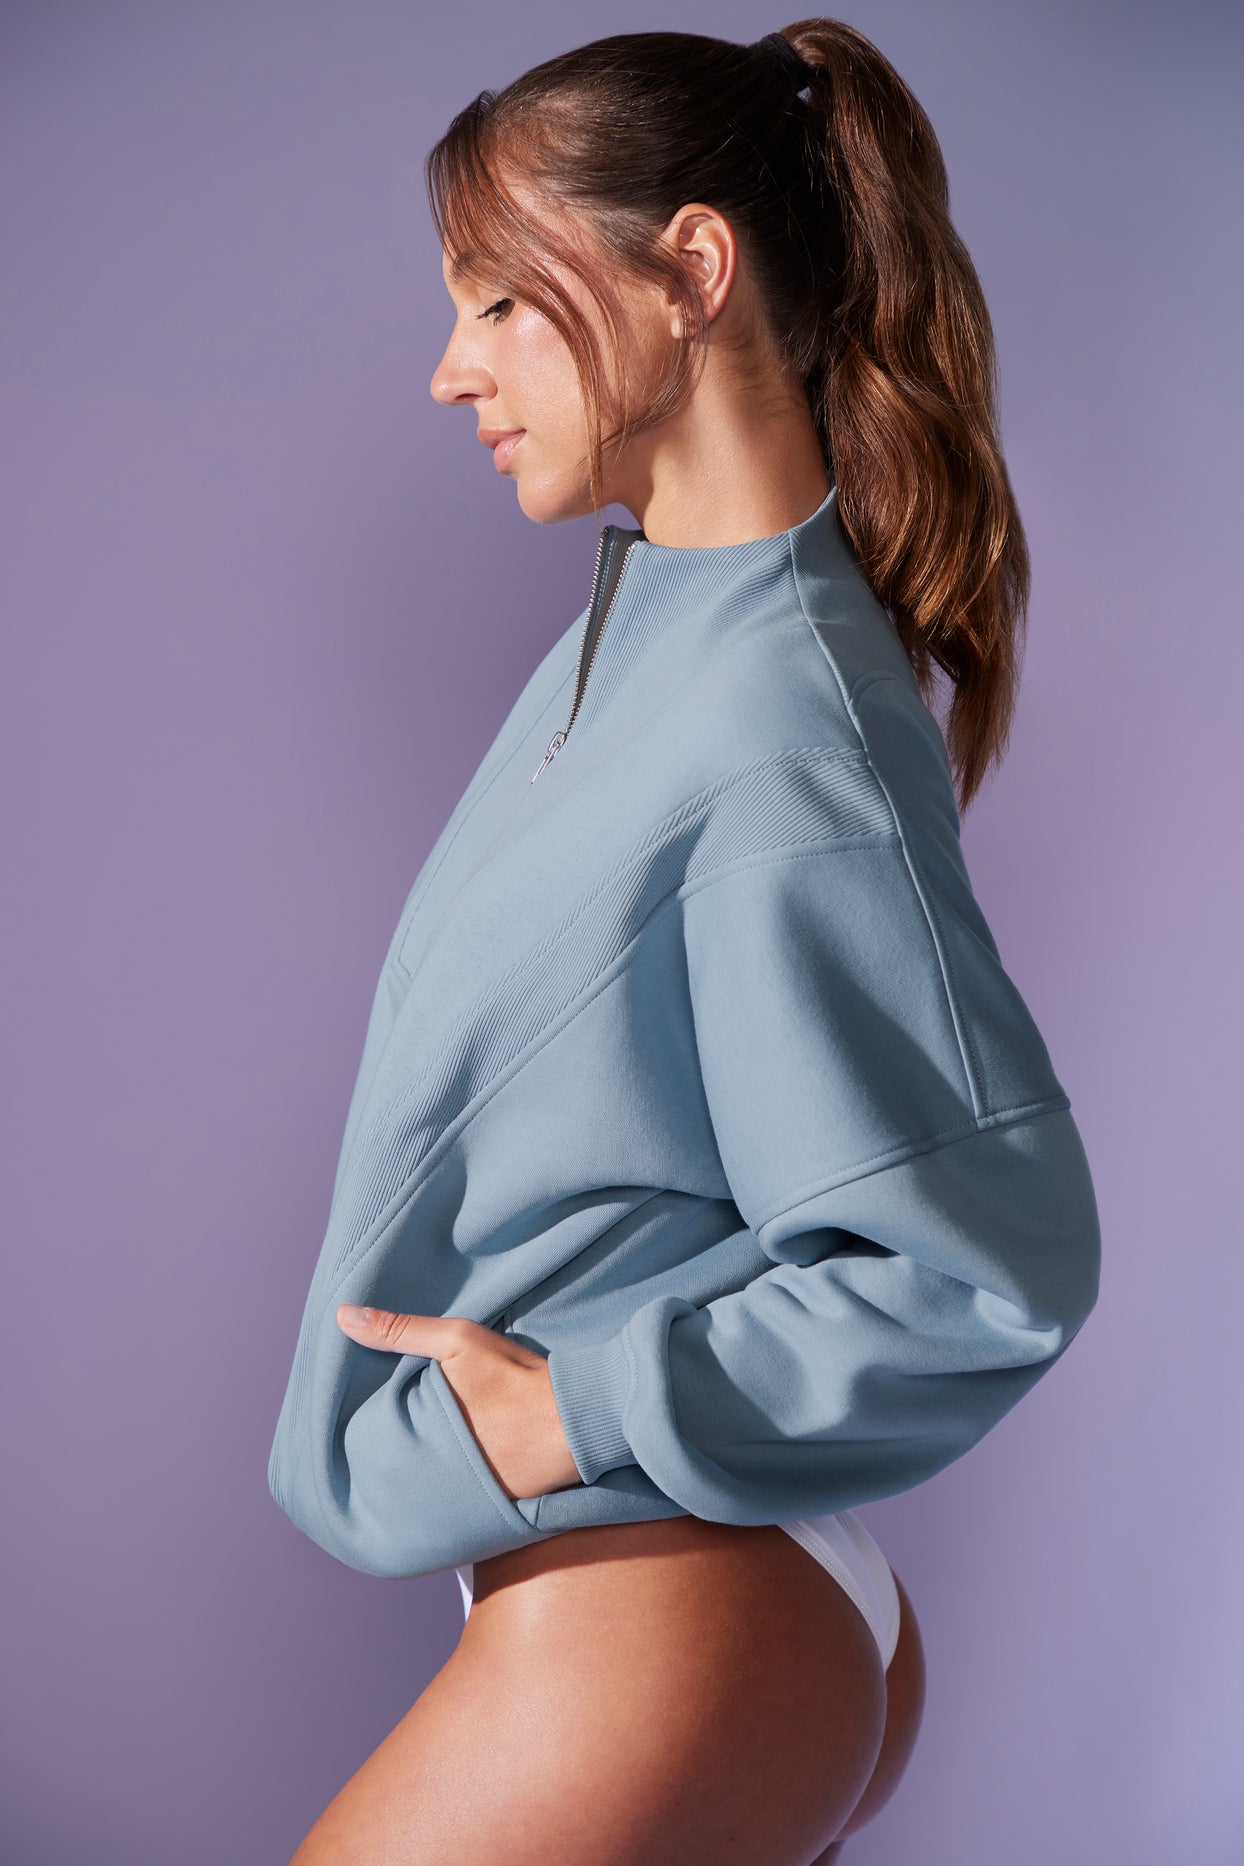 Bluza oversize zapinana na zamek błyskawiczny w kolorze denim blue